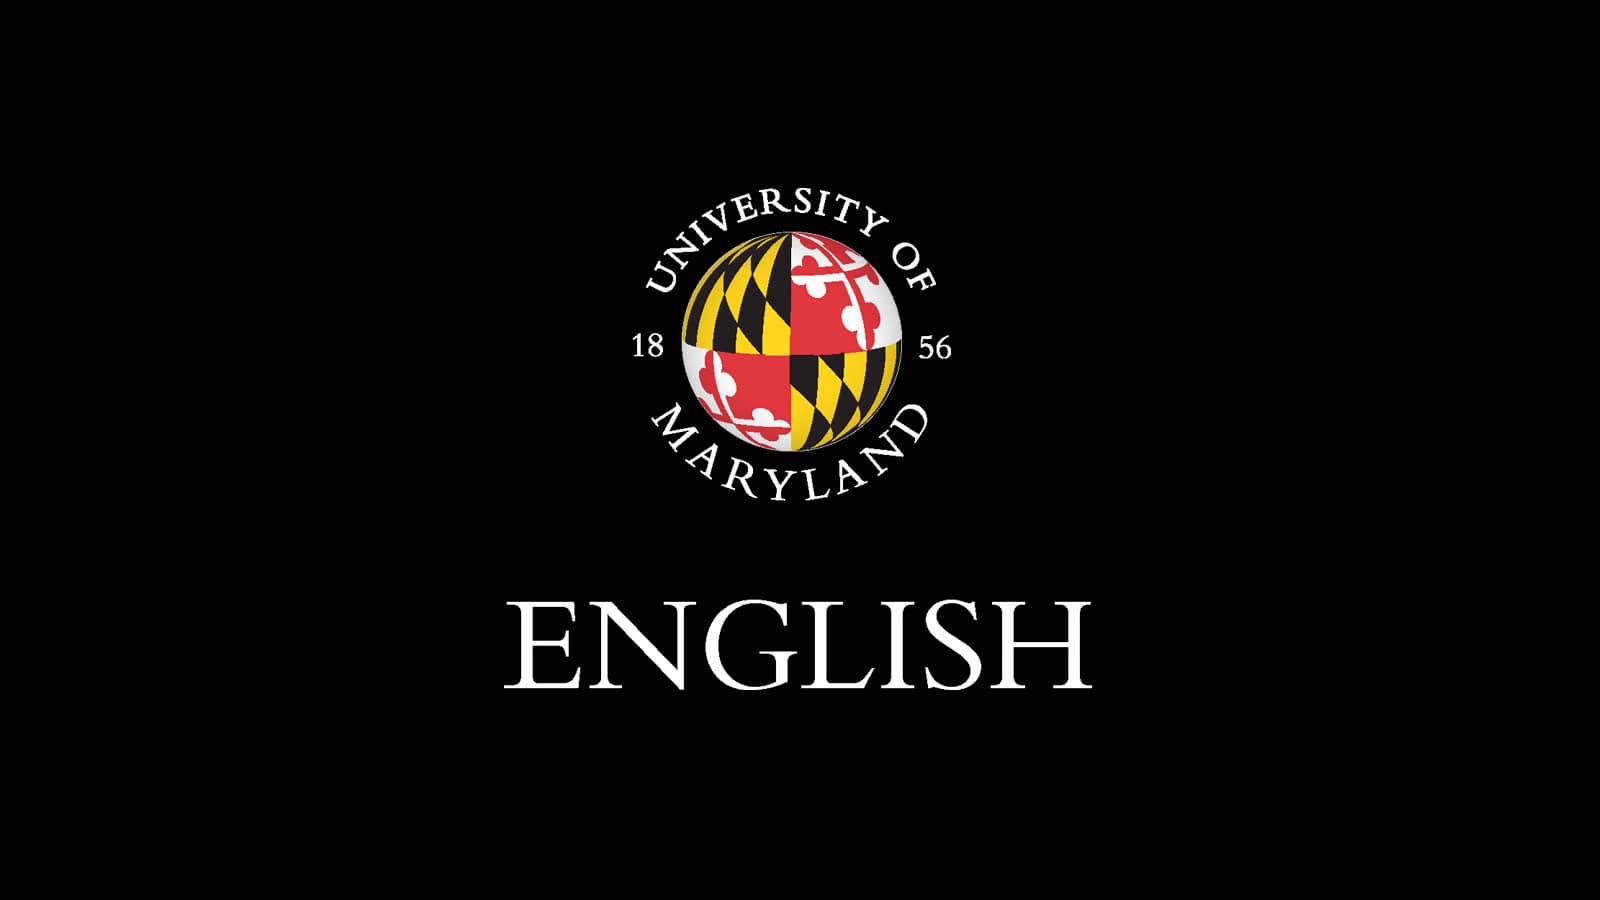 English at University of Maryland